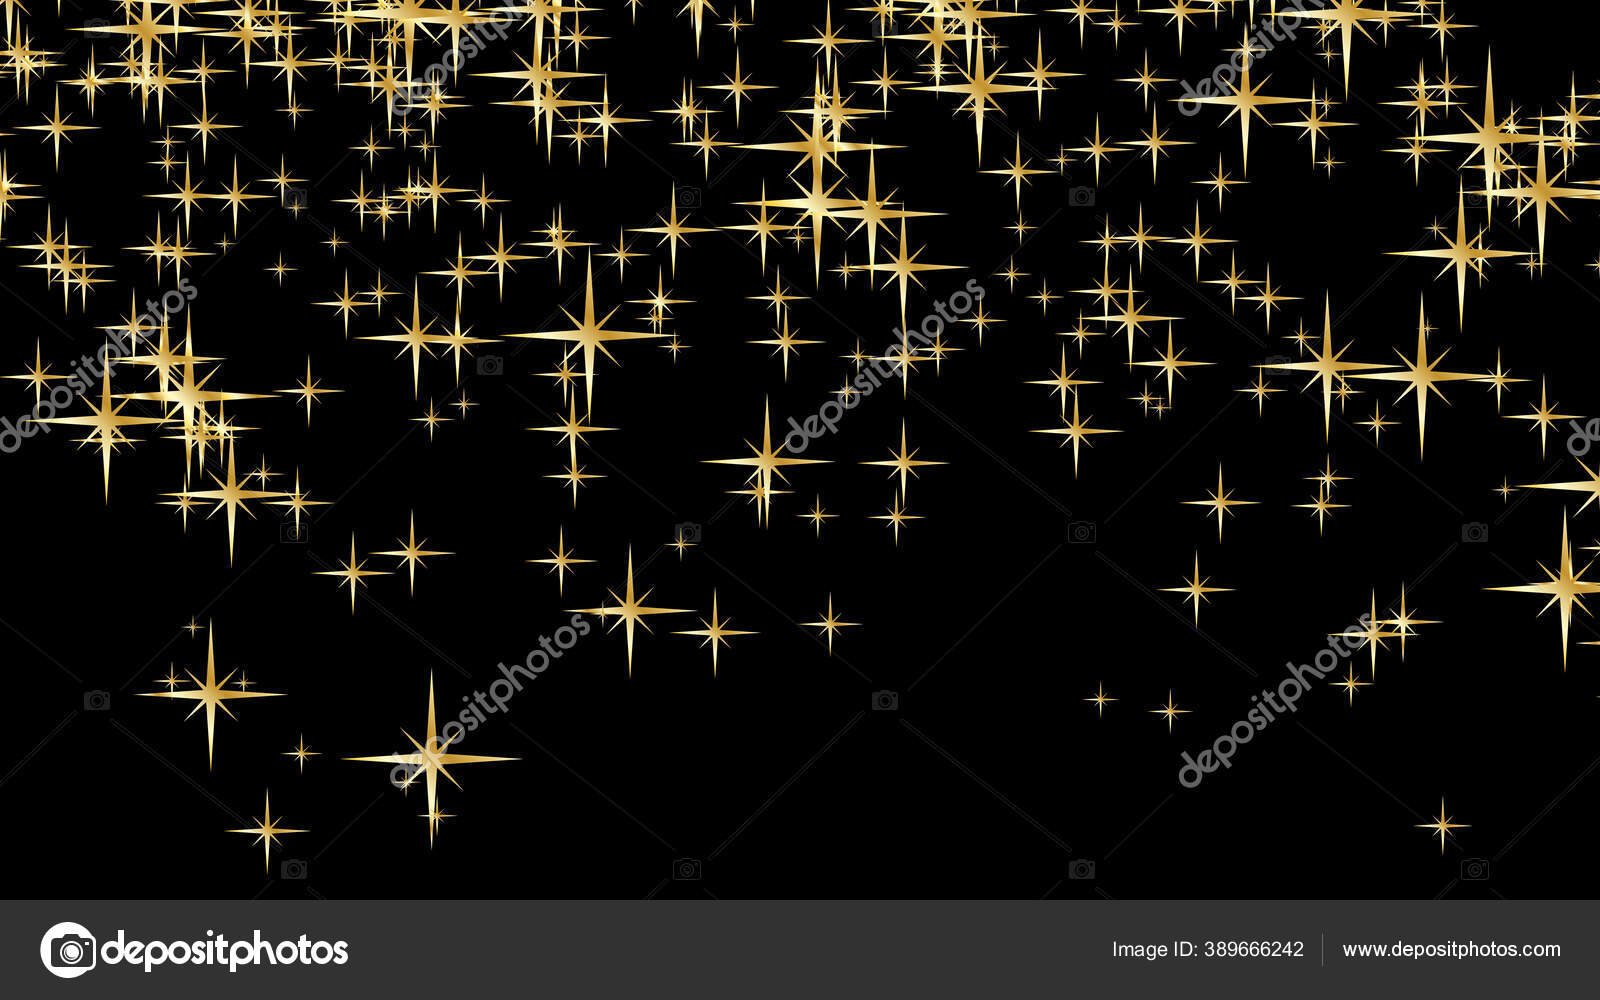 goldene glitzersterne auf schwarzem hintergrund. - Stockfoto